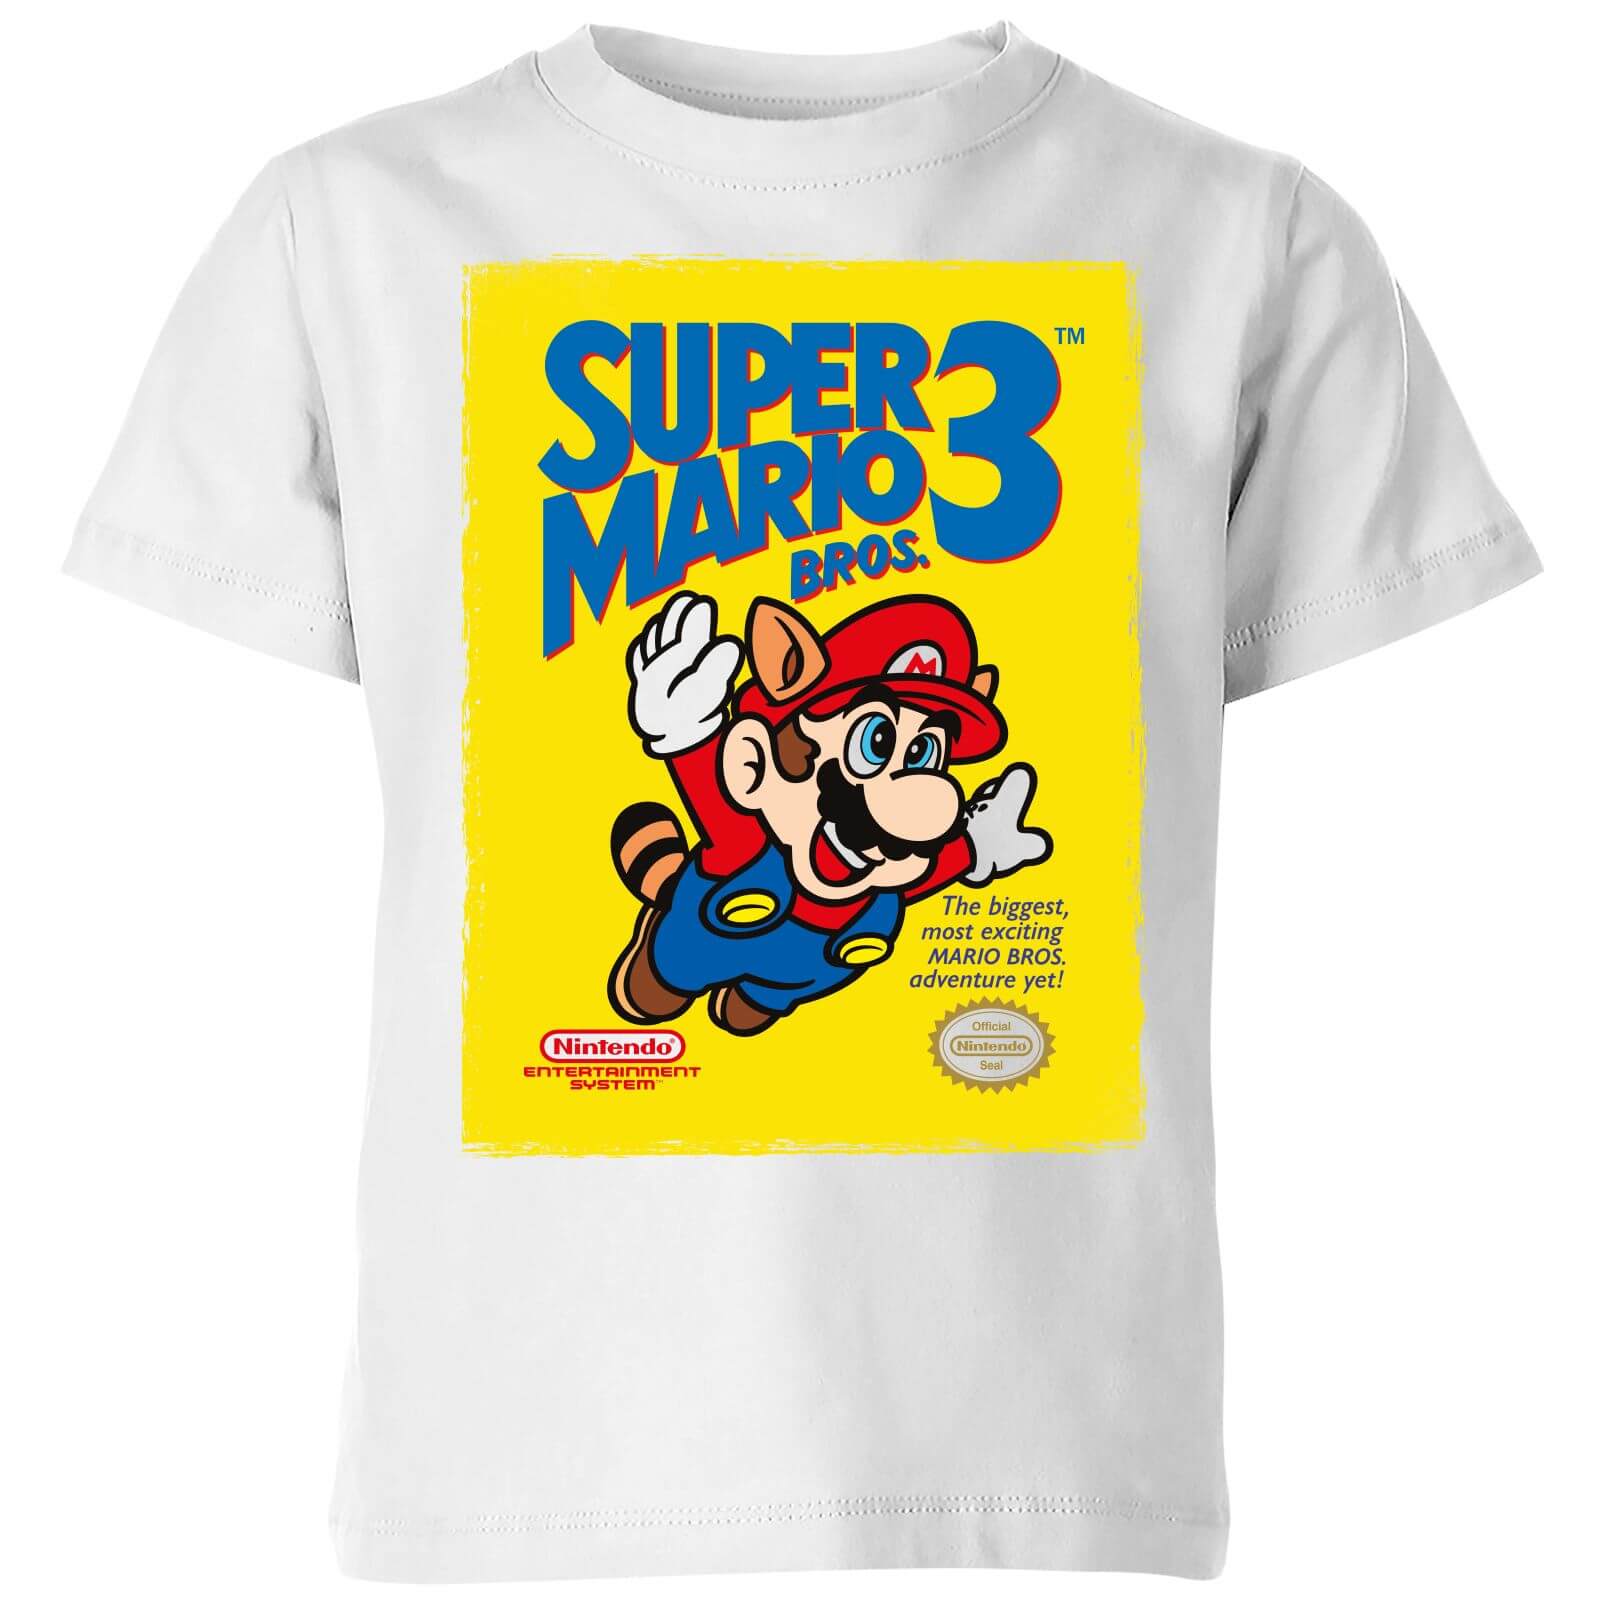 Nintendo Super Mario Bros 3 Kids' T-Shirt - White - 11-12 Years